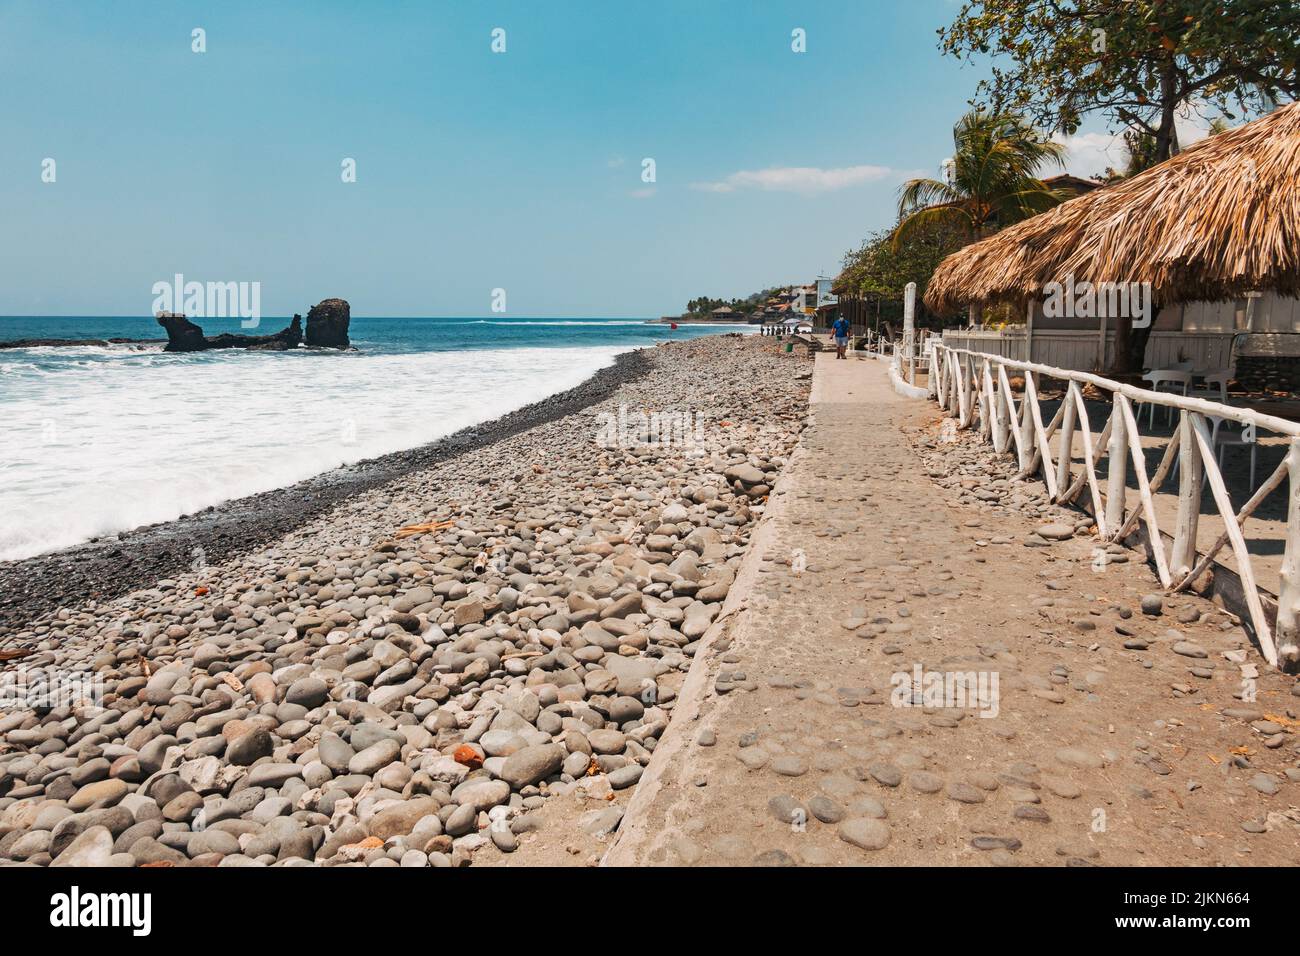 the rocky shores of El Tunco beach on the Pacific Coast of El Salvador Stock Photo